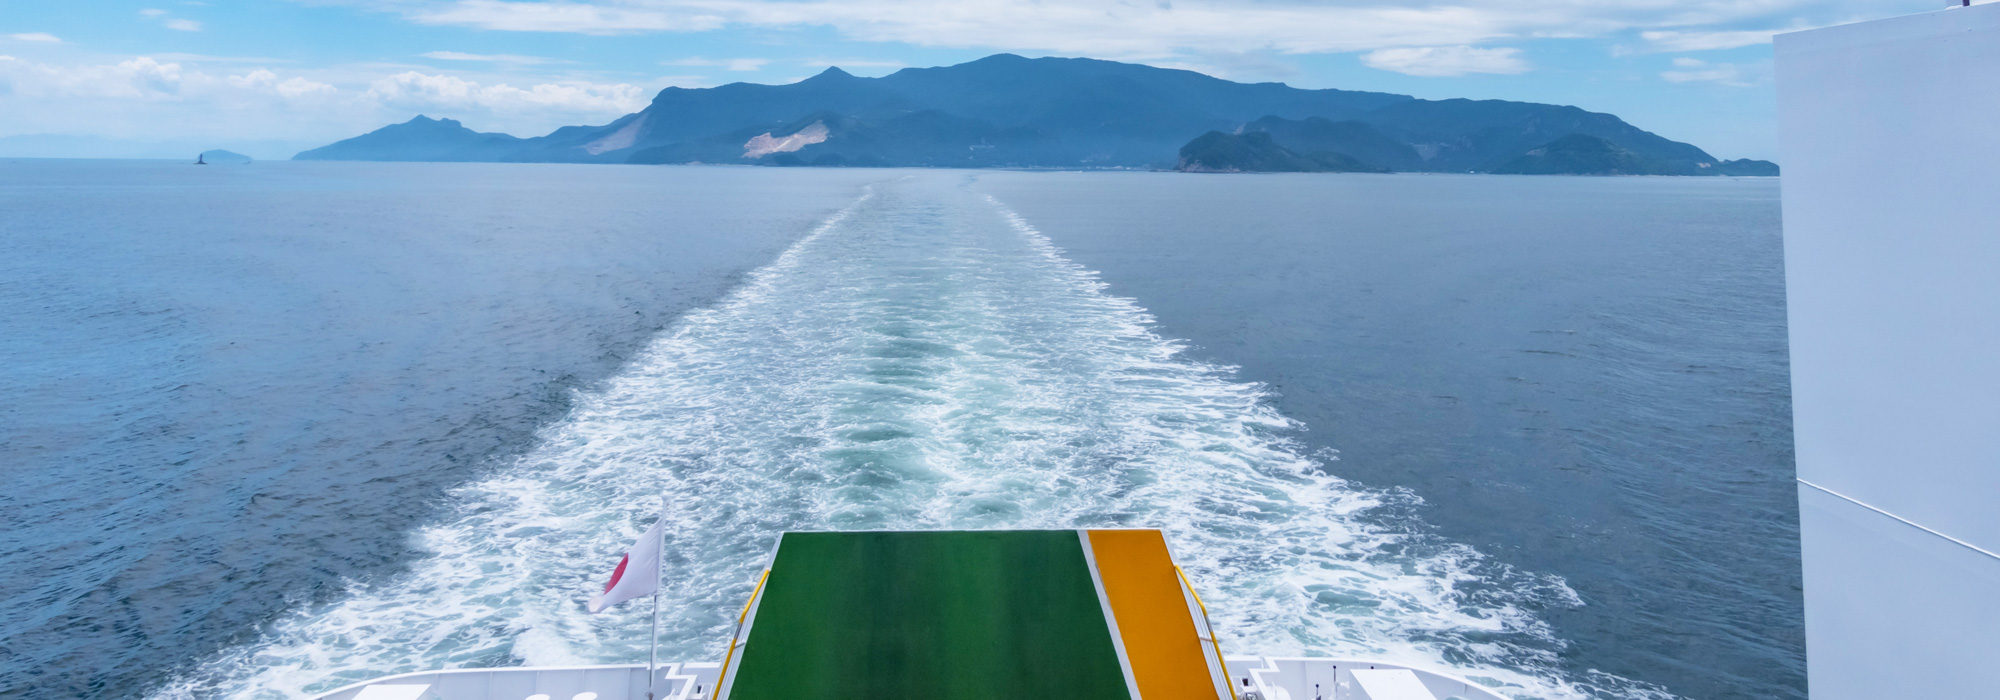 澄んだ空気と共に青瀬戸内海の離島・香川県の小豆島の海でクルージング体験をしよう